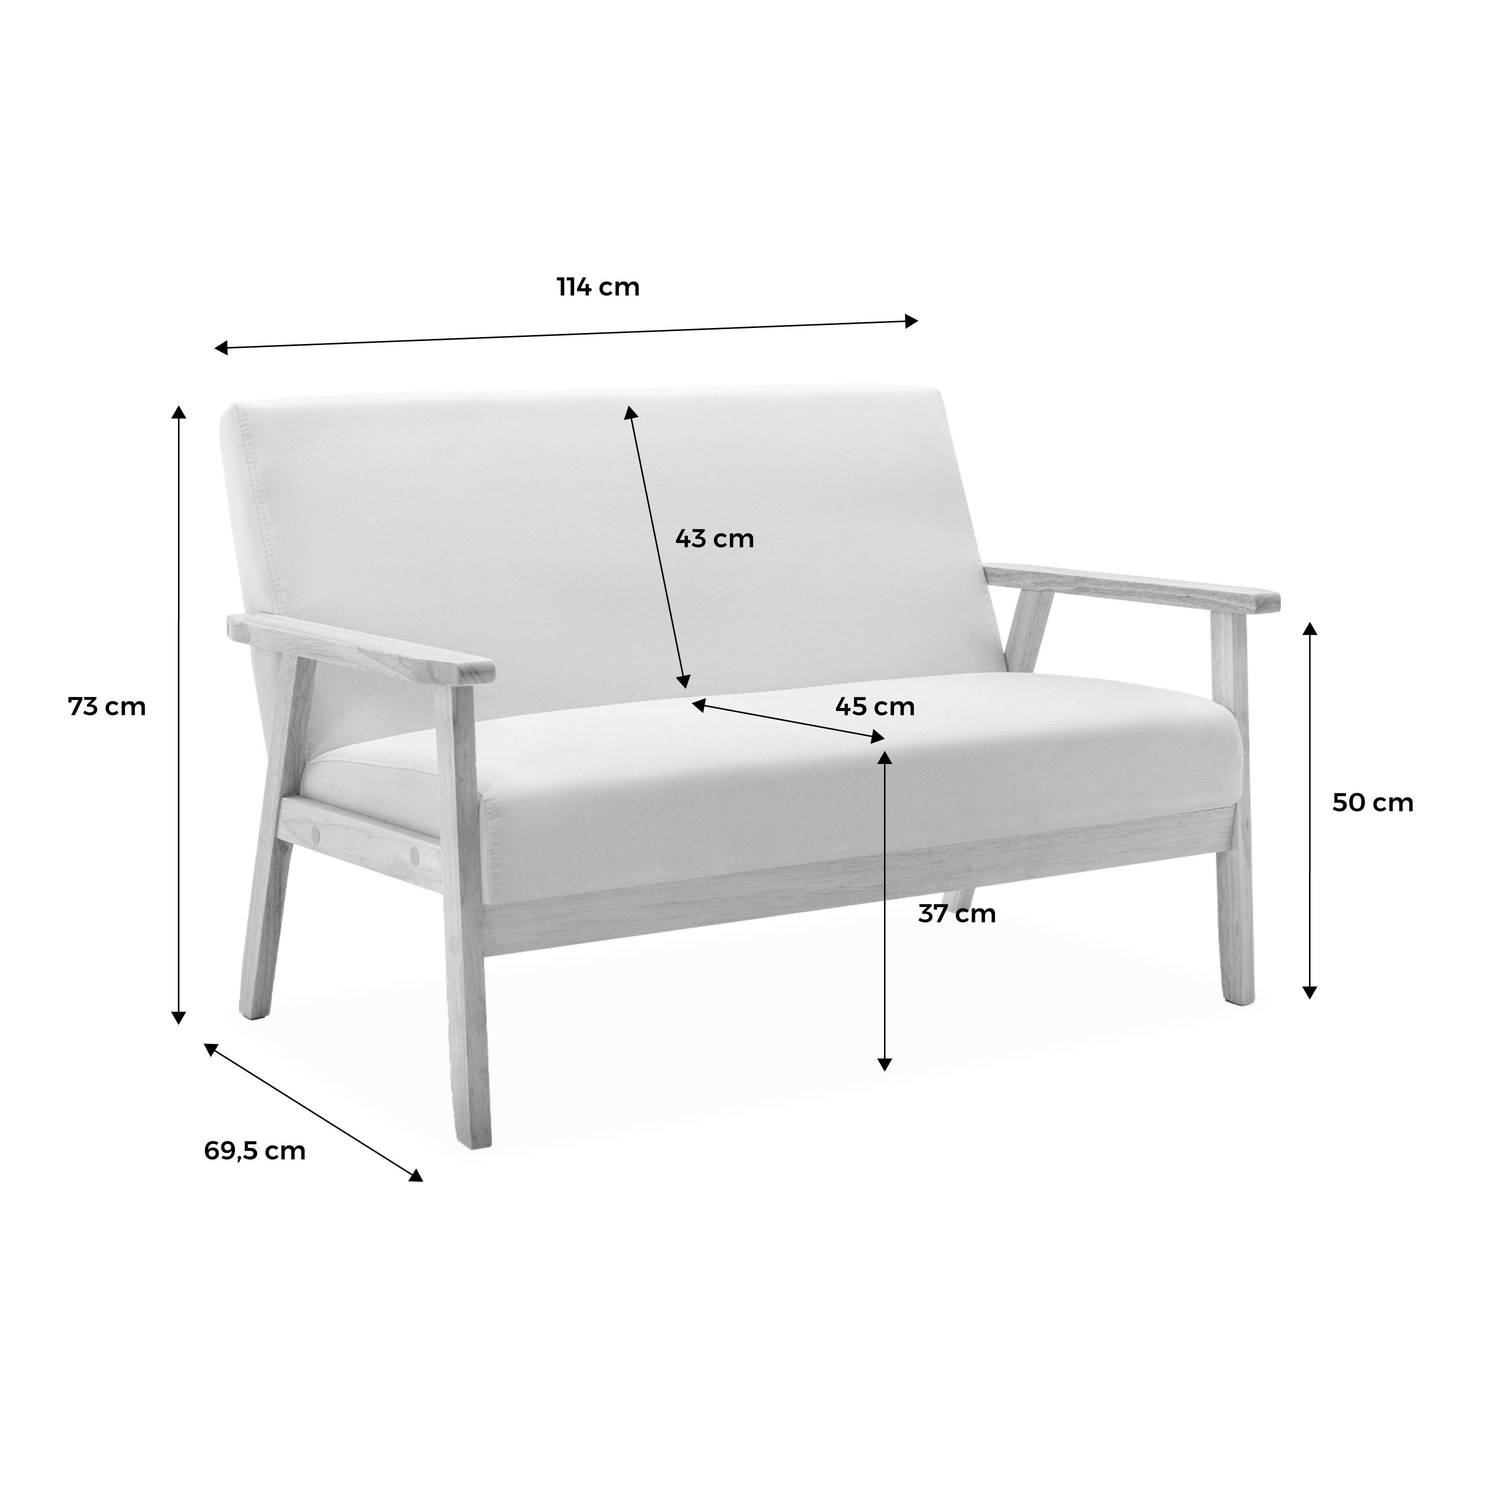 Banquette et fauteuil en bois et tissu gris foncé, Isak, L 114 x l 69,5 x H 73cm Photo8